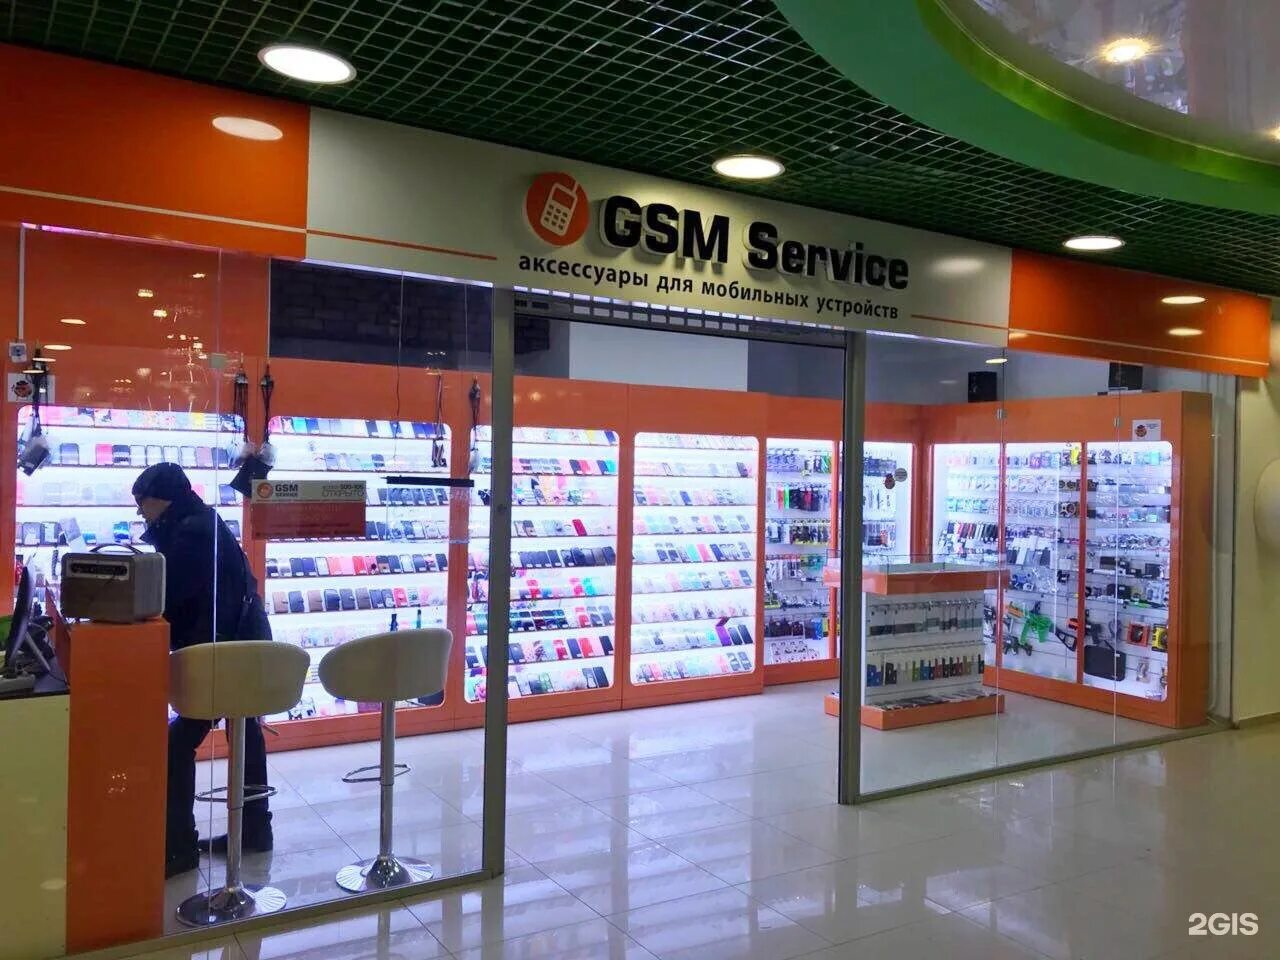 Gsm спб интернет. GSM магазин. Питер GSM магазин. ГСМ Store. Gsm138 Иркутск.